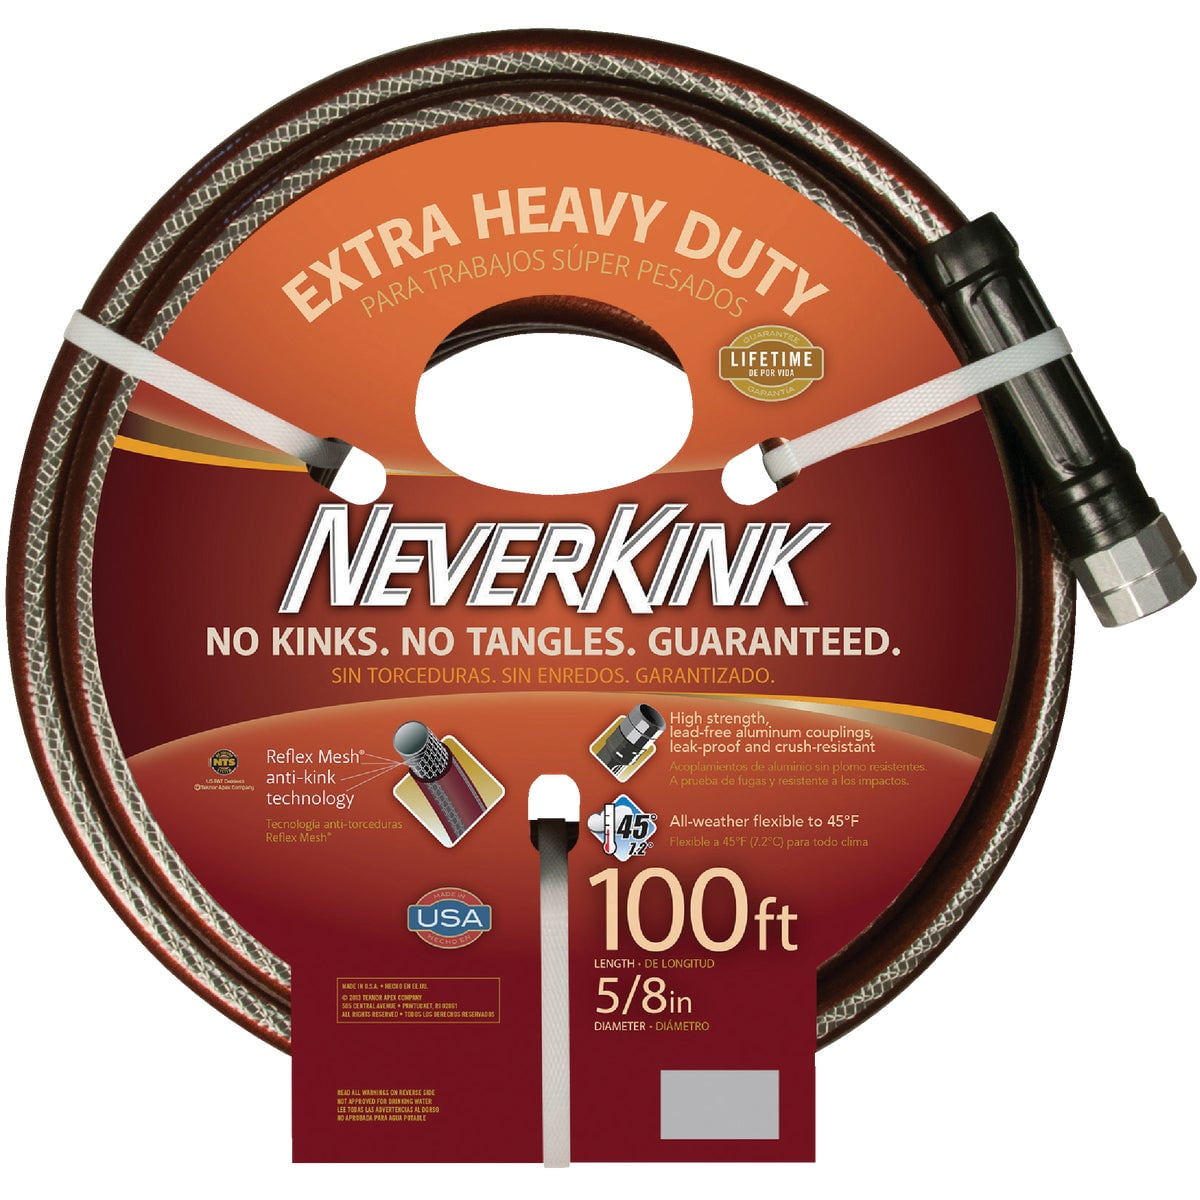 Heavy Duty Neverkink Commercial Outdoor Dia x75 ft Garden Water Hose 5/8 in